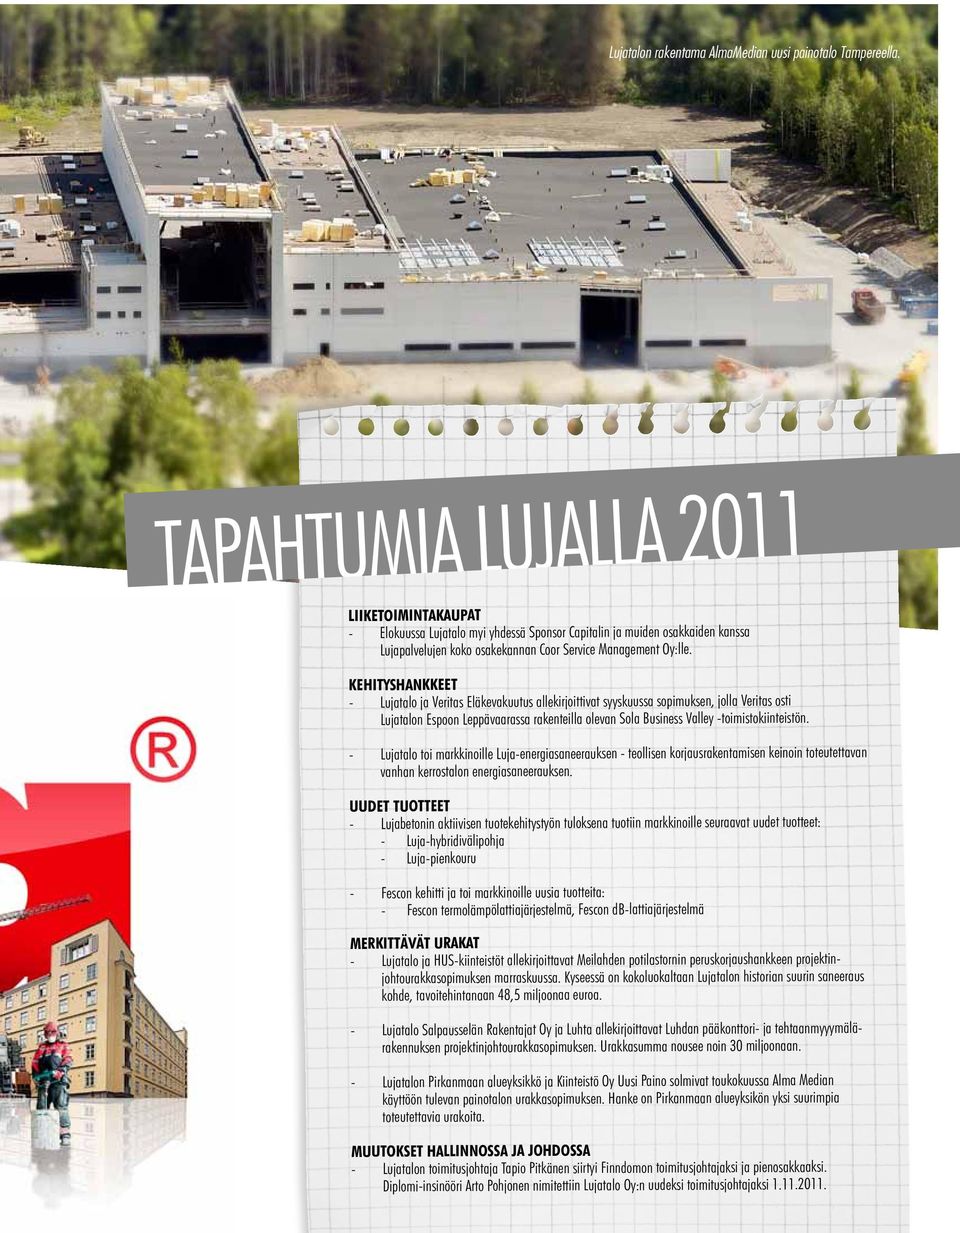 Kehityshankkeet - Lujatalo ja Veritas Eläkevakuutus allekirjoittivat syyskuussa sopimuksen, jolla Veritas osti Lujatalon Espoon Leppävaarassa rakenteilla olevan Sola Business Valley